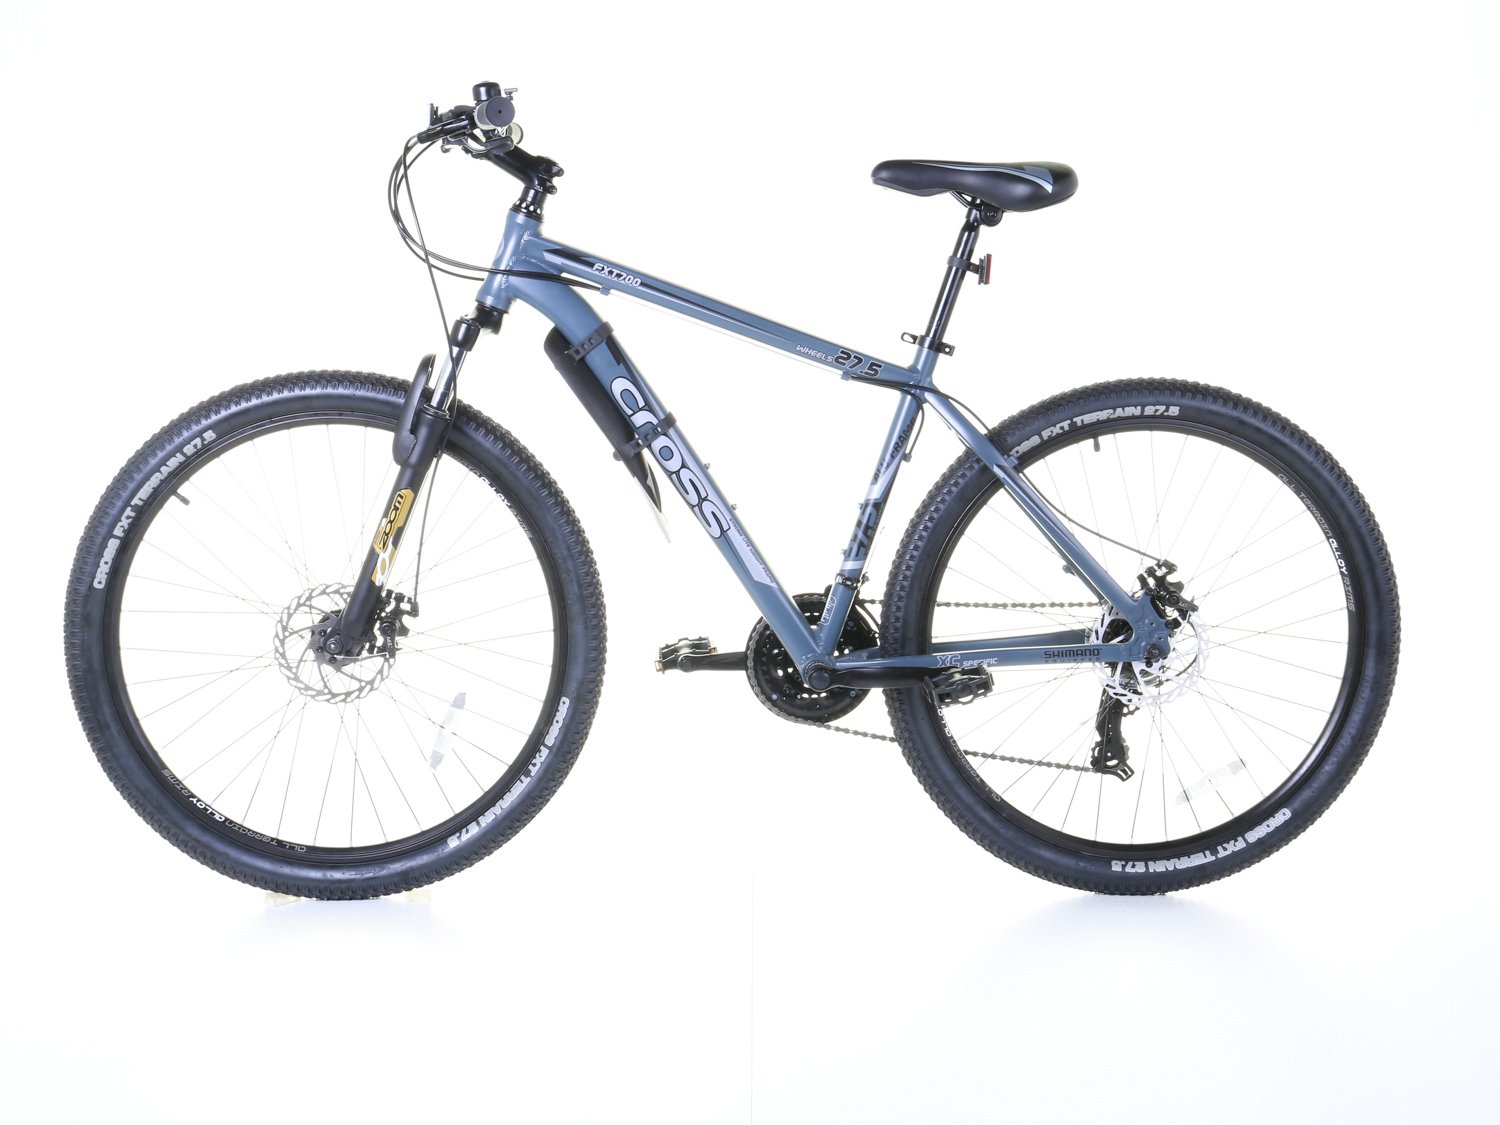 cross fxt700 27.5 inch wheel size mens mountain bike